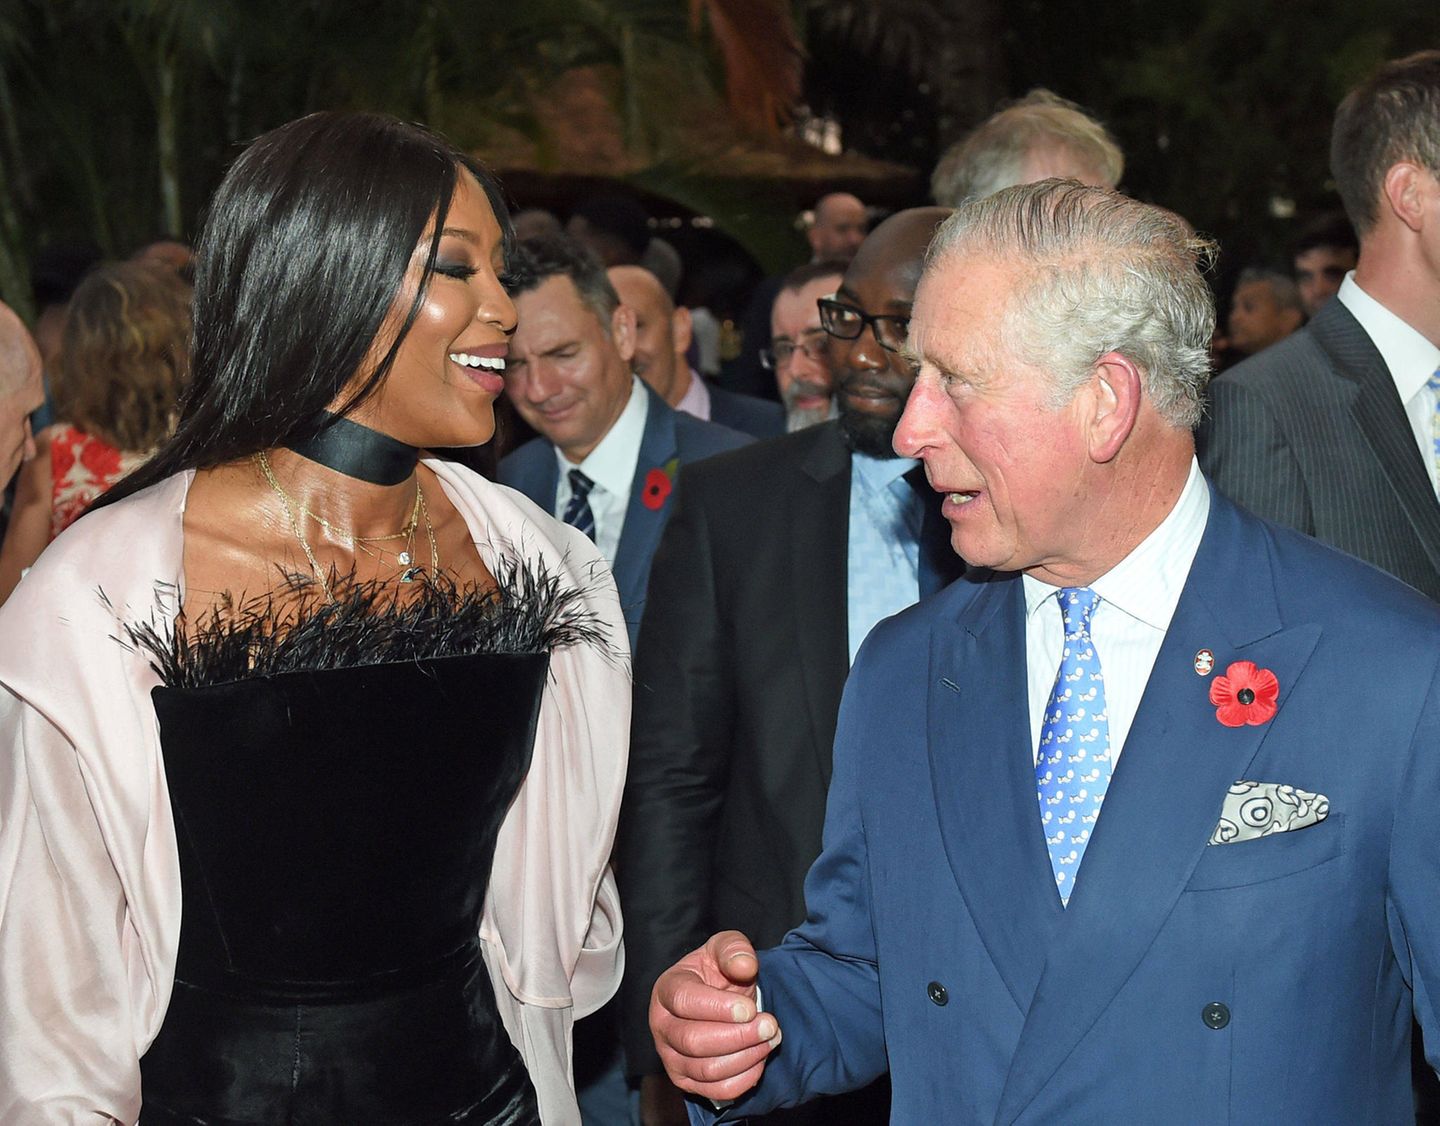 Der Prinz und die Fashion-Queen: Bei einem Empfang in Nigeria trifft die Modelikone auf den britischen Thronfolger. Das ungleiche Gespann hat dabei sichtlich Spaß. 